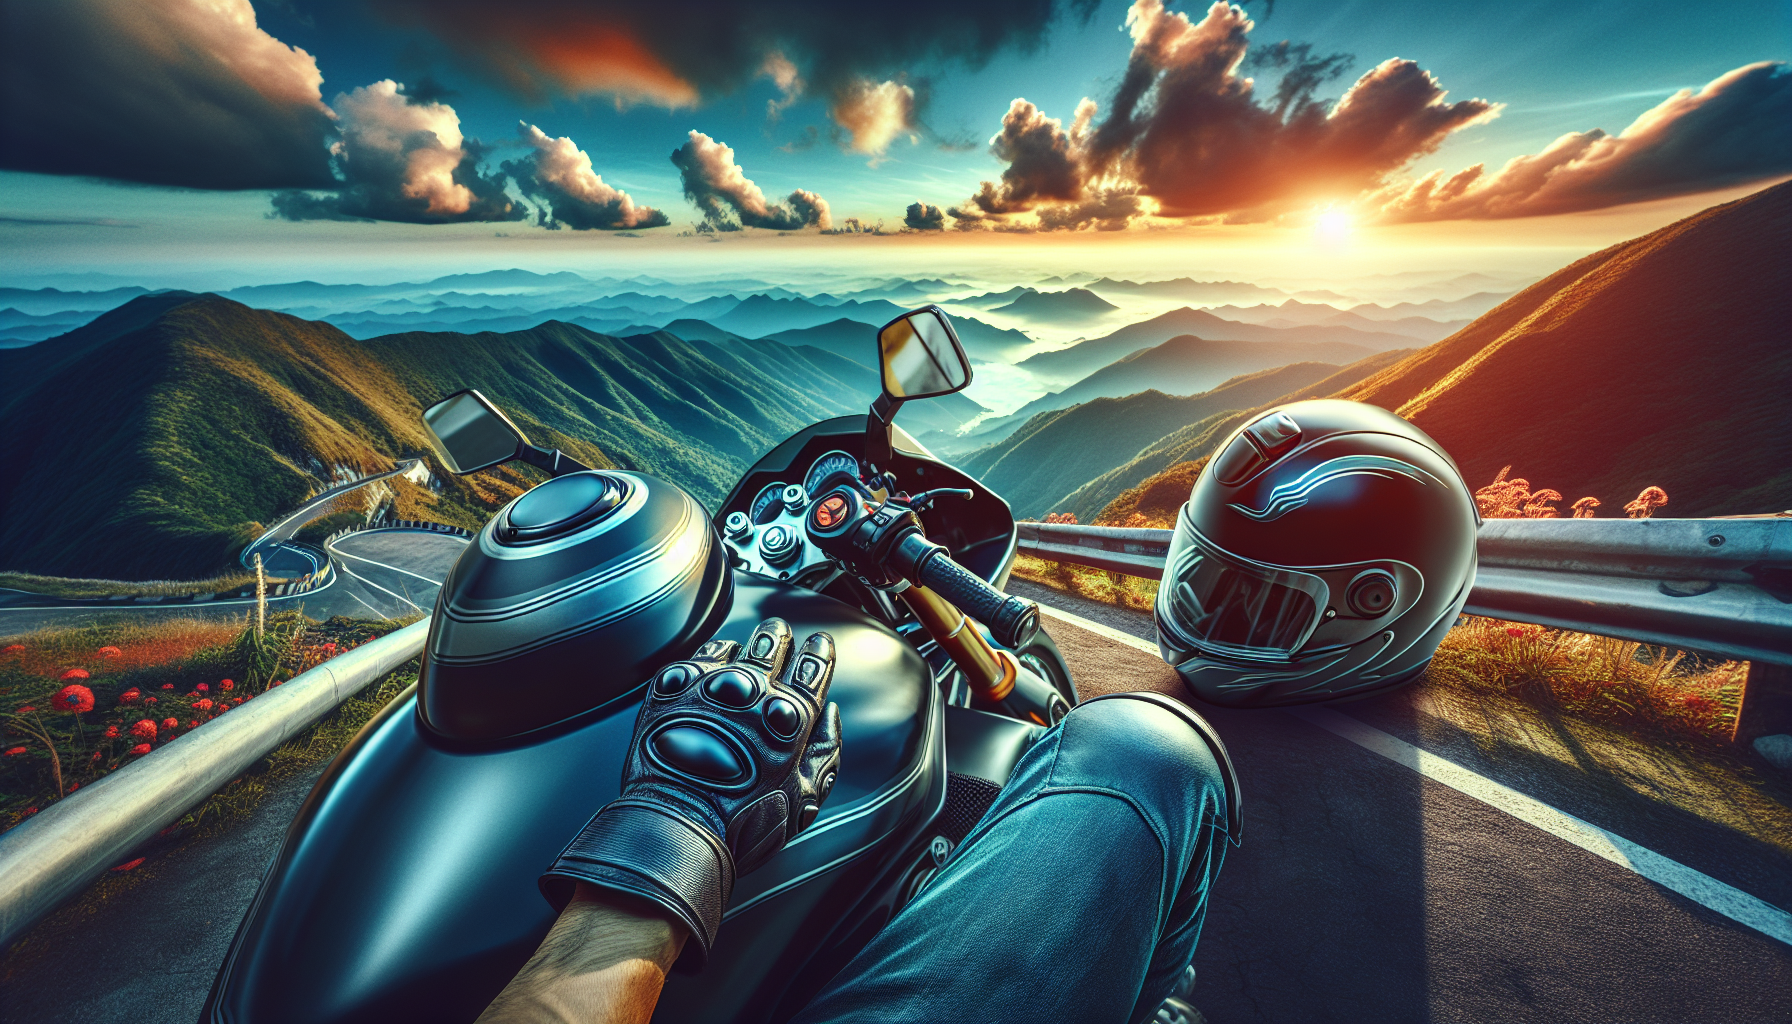 découvrez comment la conduite d'une moto peut vous procurer des sensations inédites et uniques ! apprenez à vivre l'expérience ultime de la liberté et de l'aventure sur deux roues.